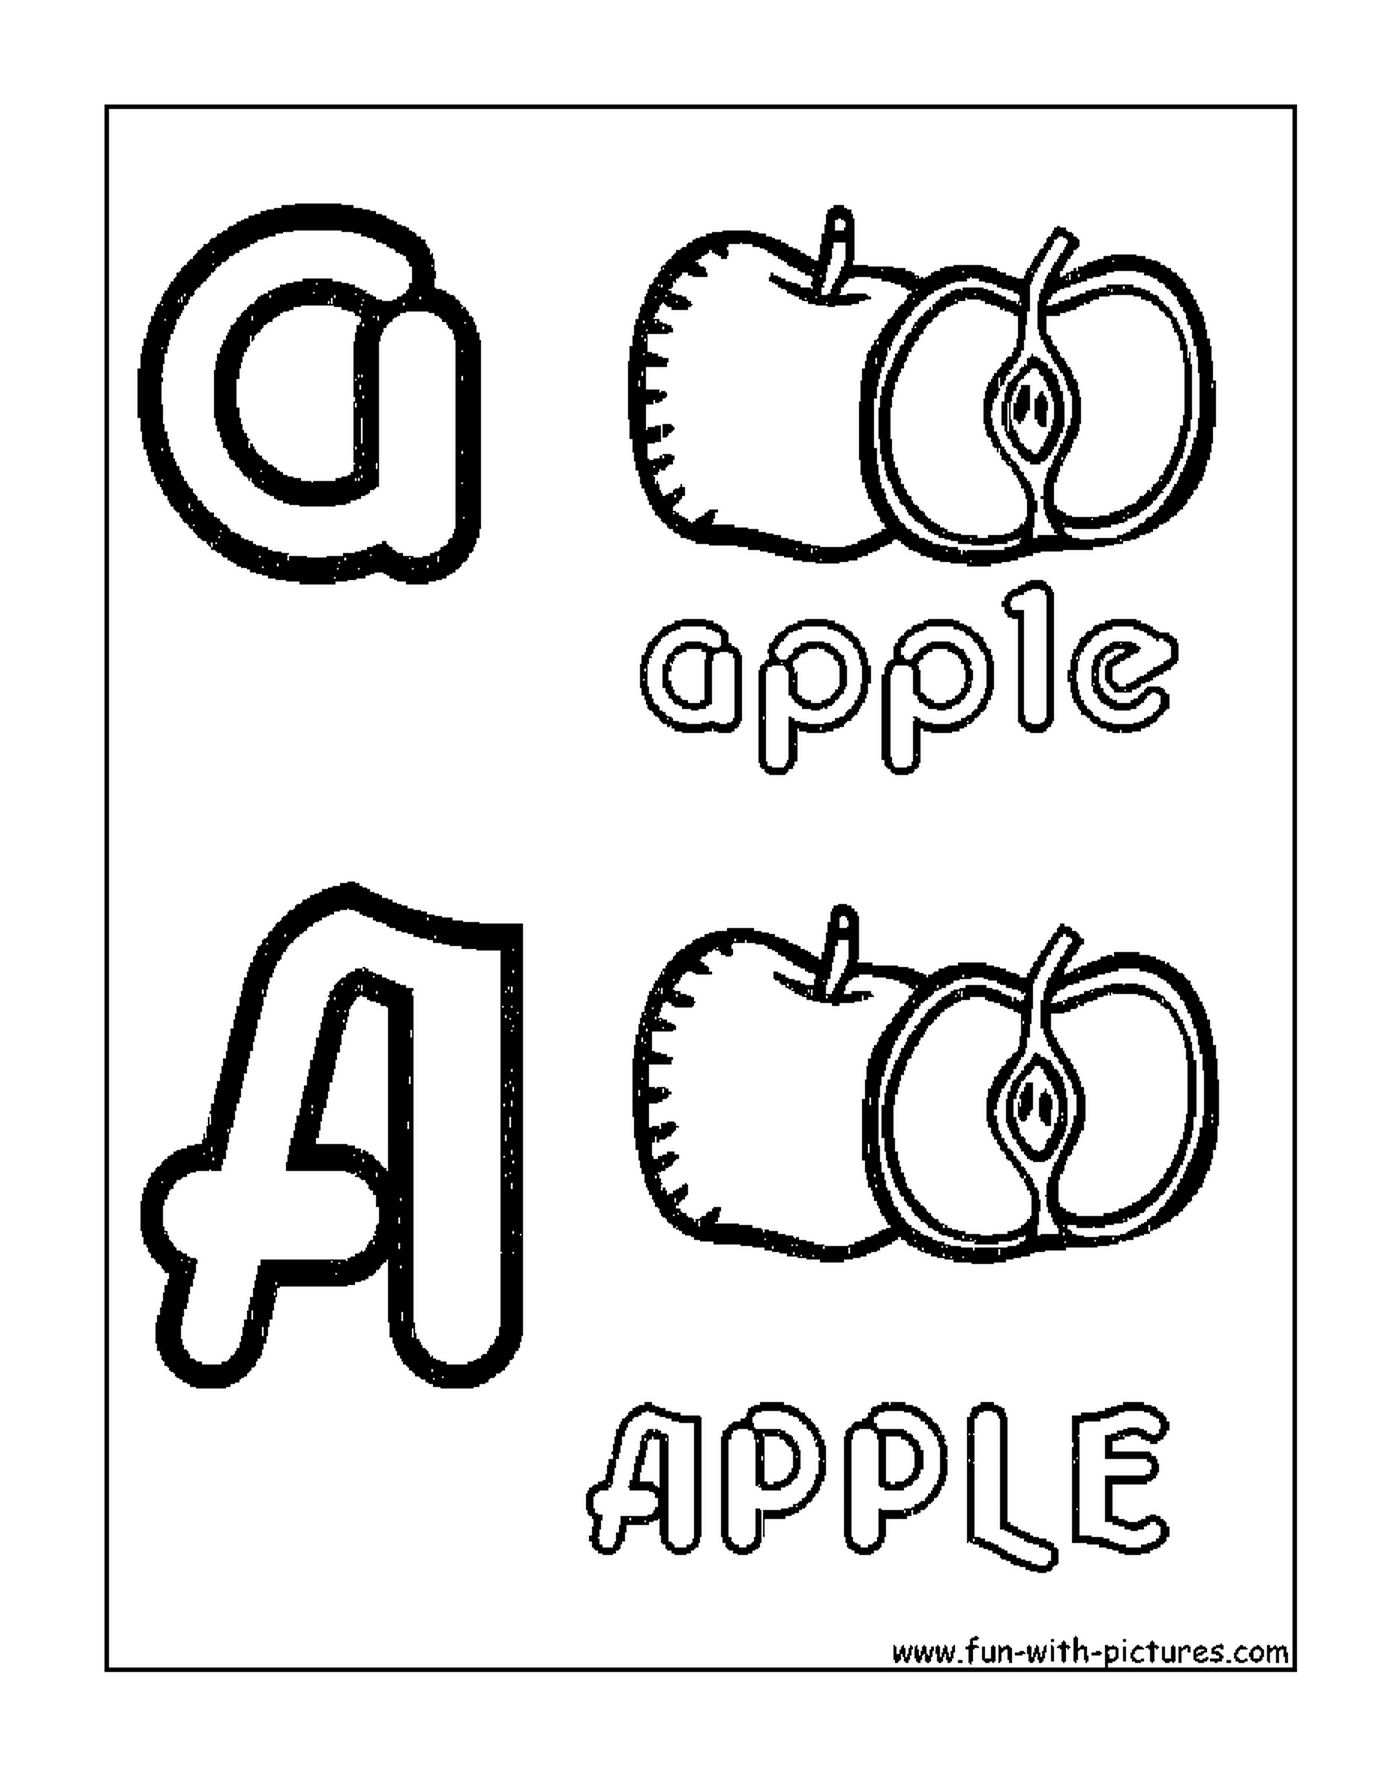  Apfel im Alphabet 